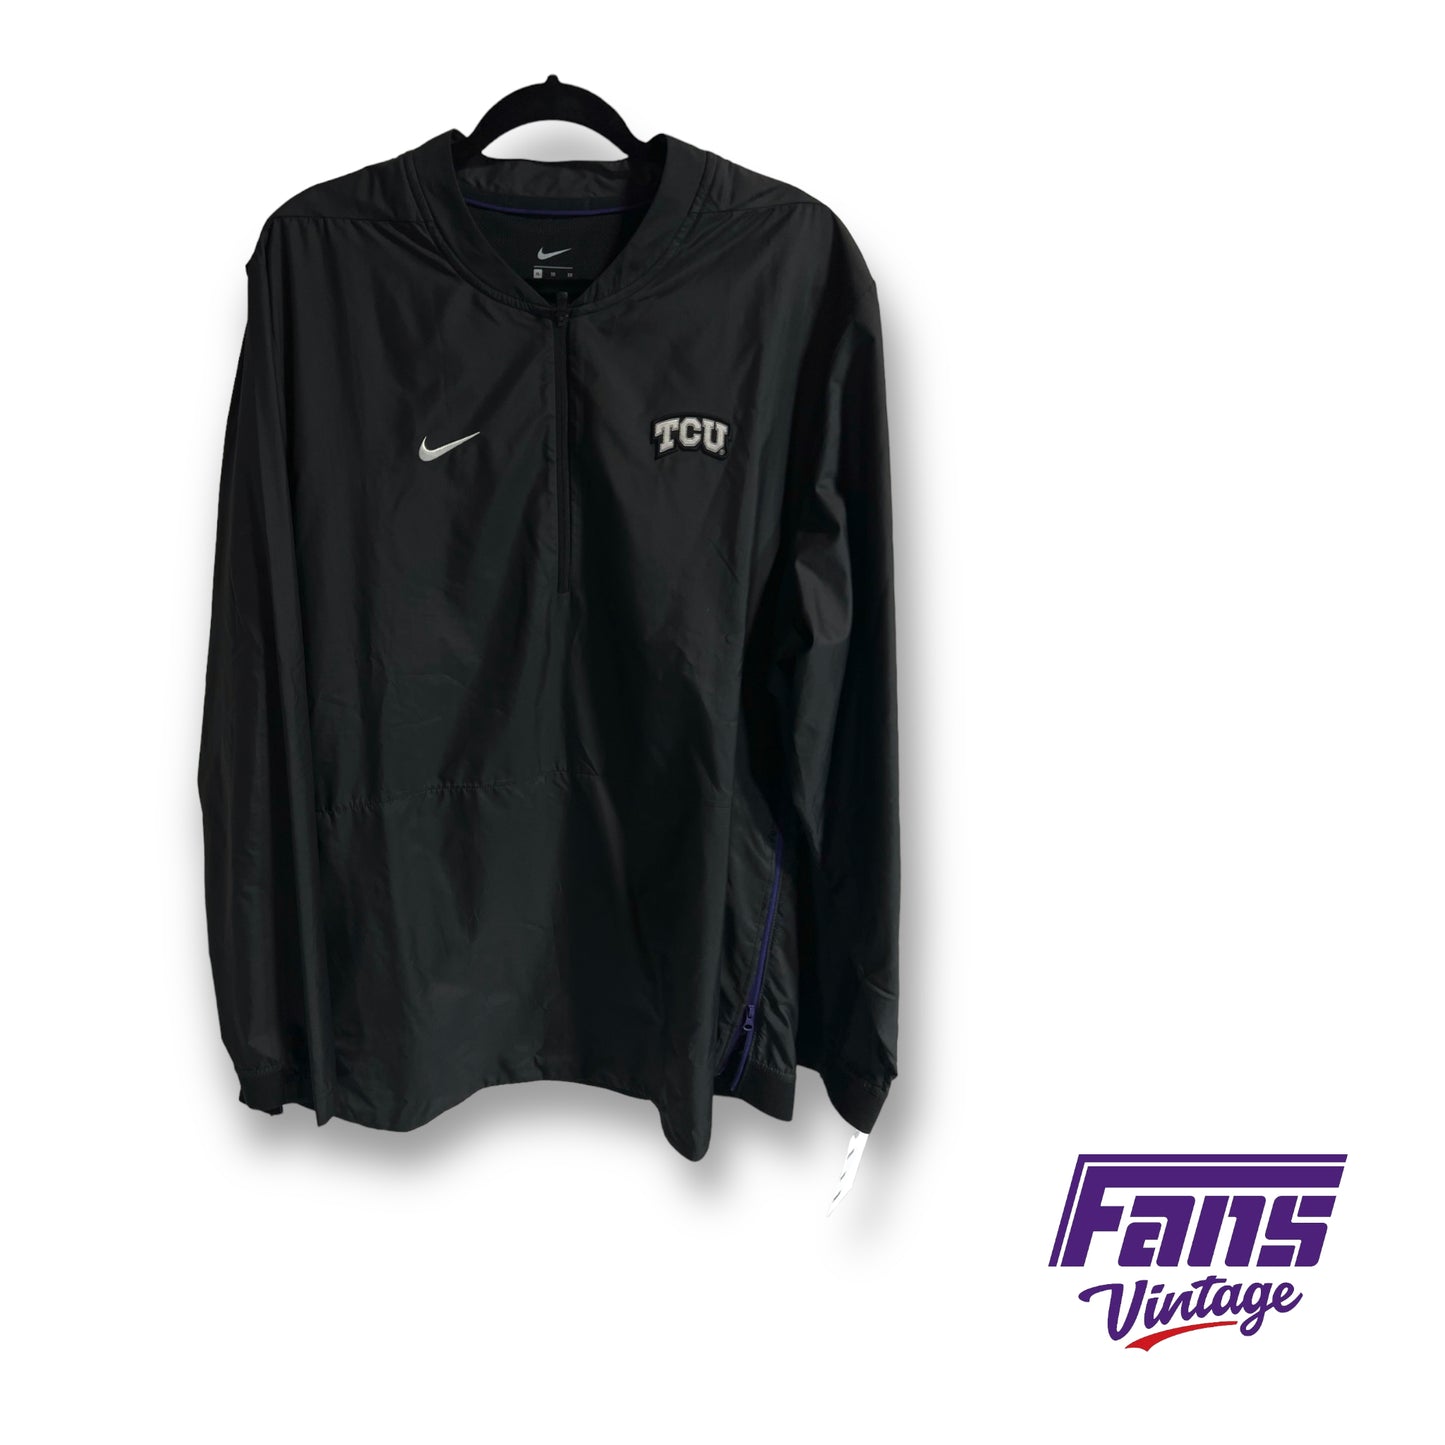 Nike TCU team issued jacket